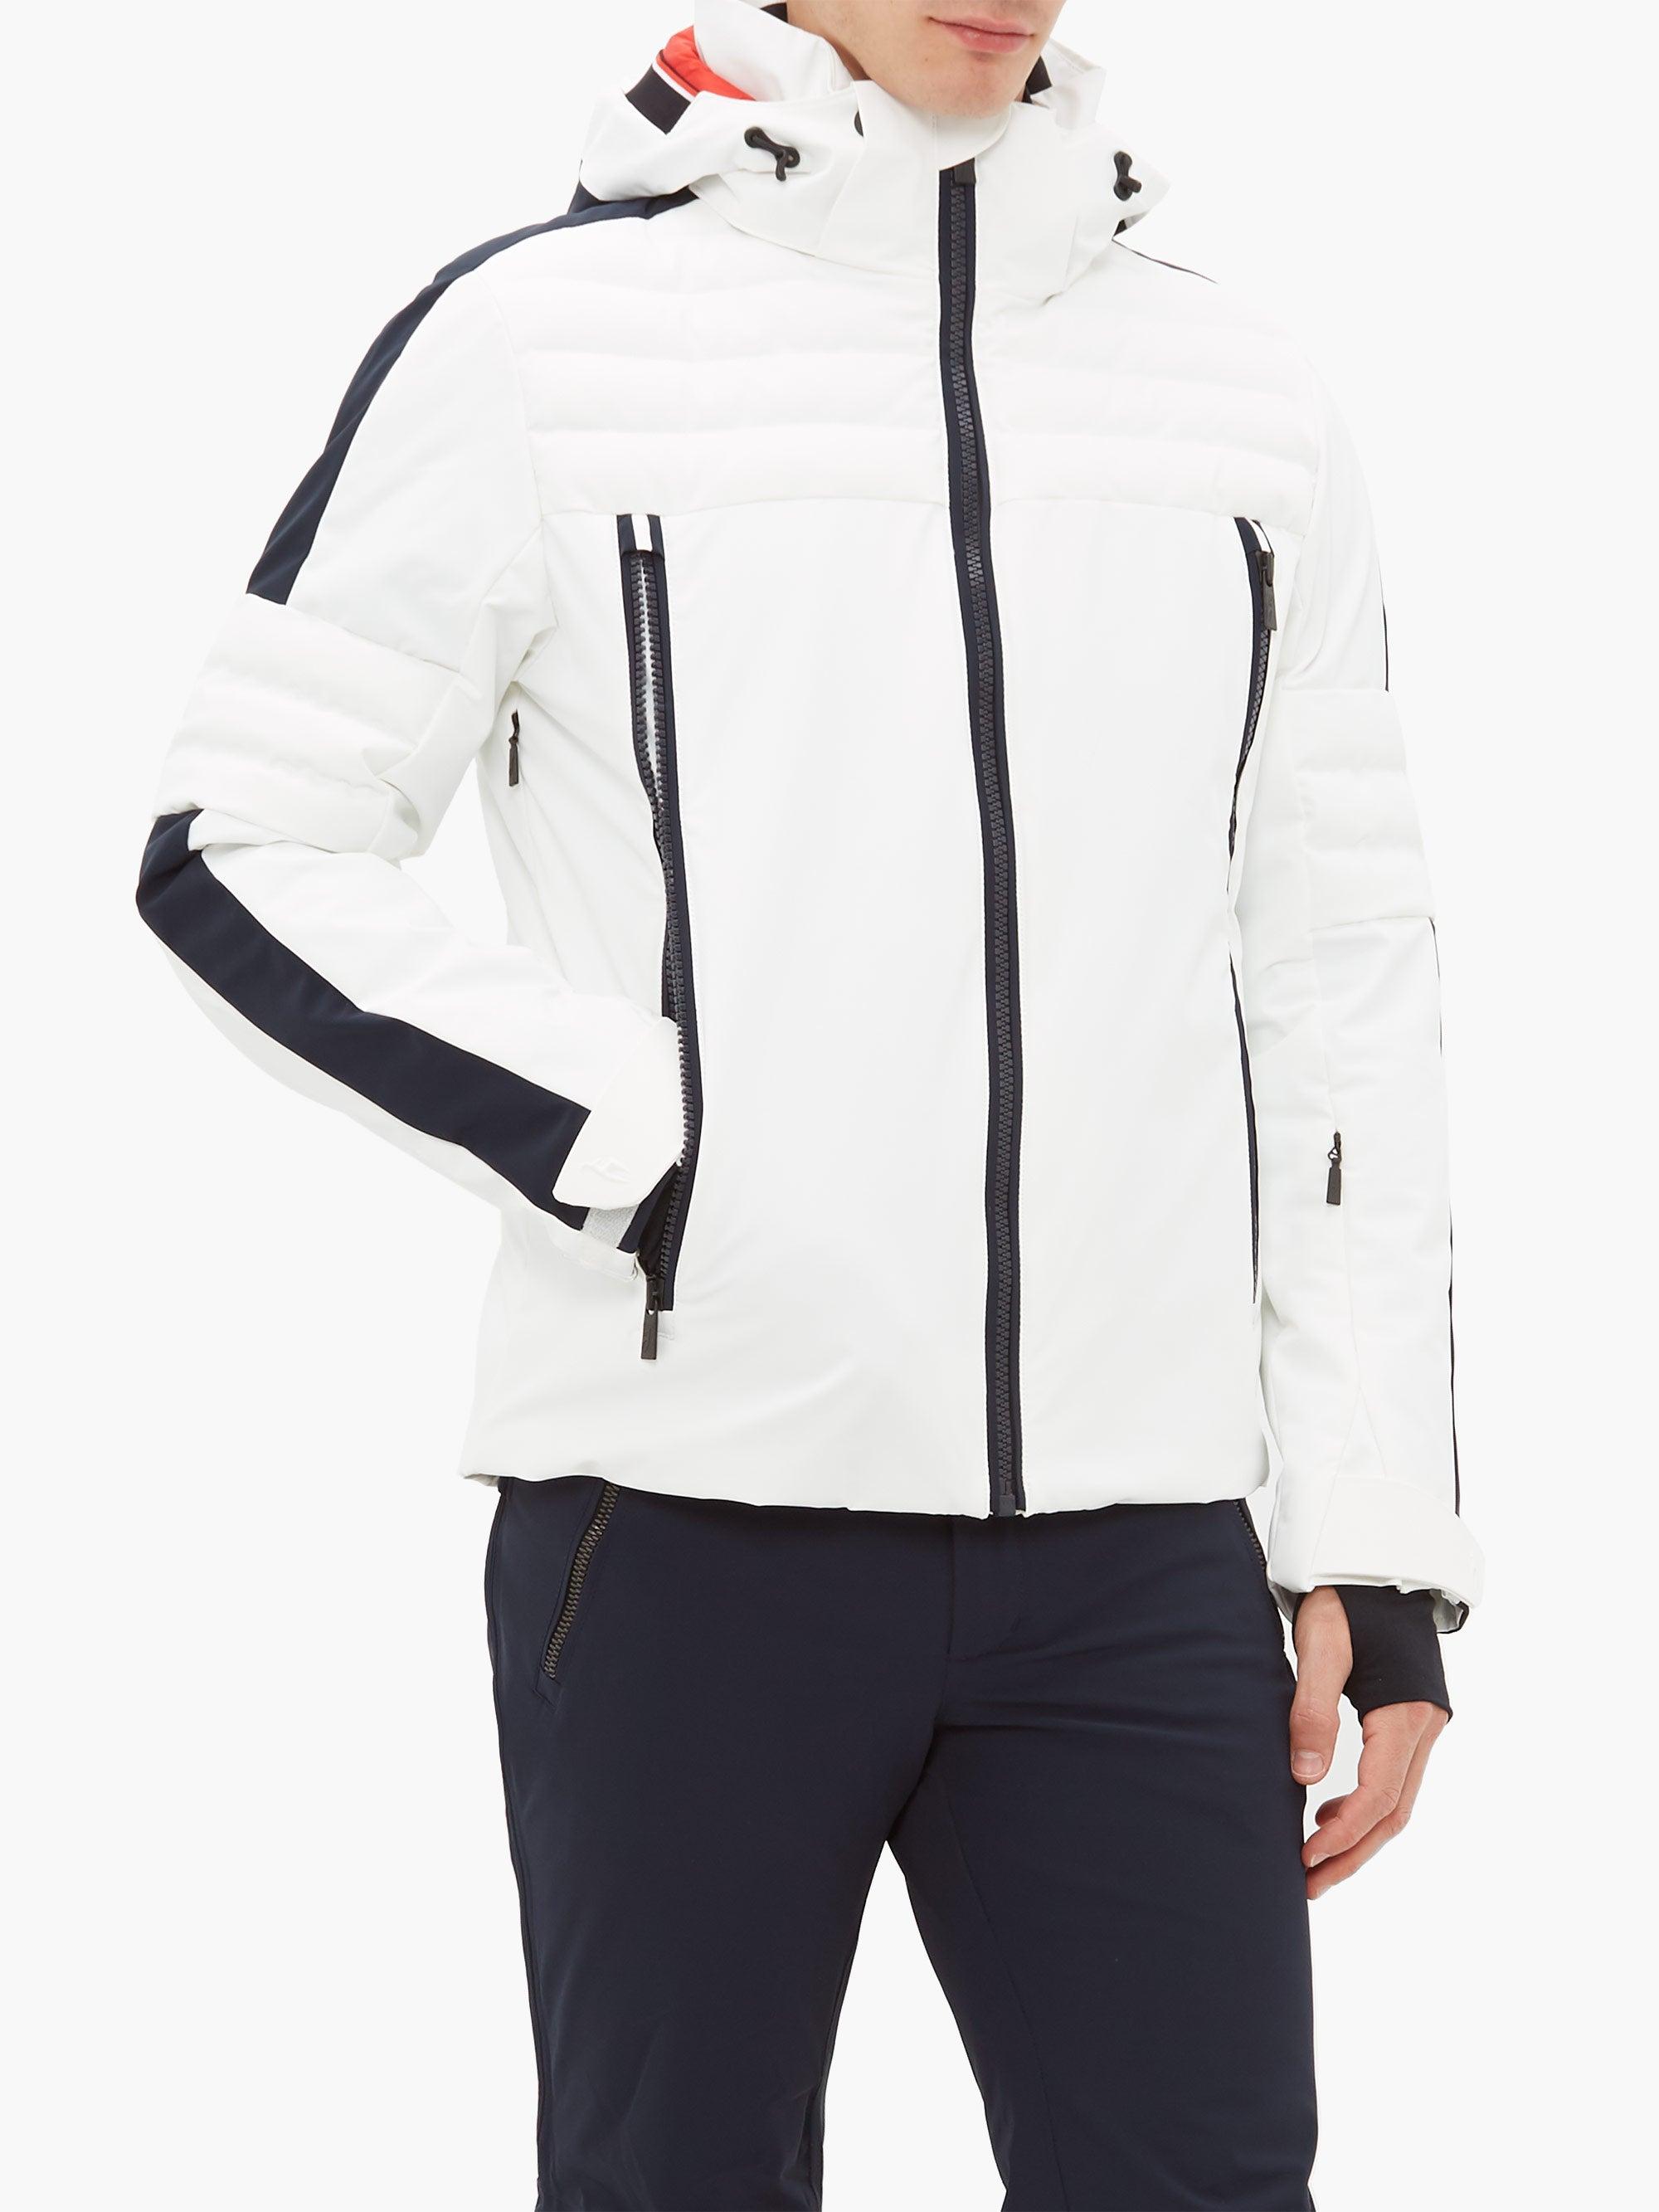 Toni Sailer Elliot Technical Soft-shell Ski Jacket in White for Men - Lyst